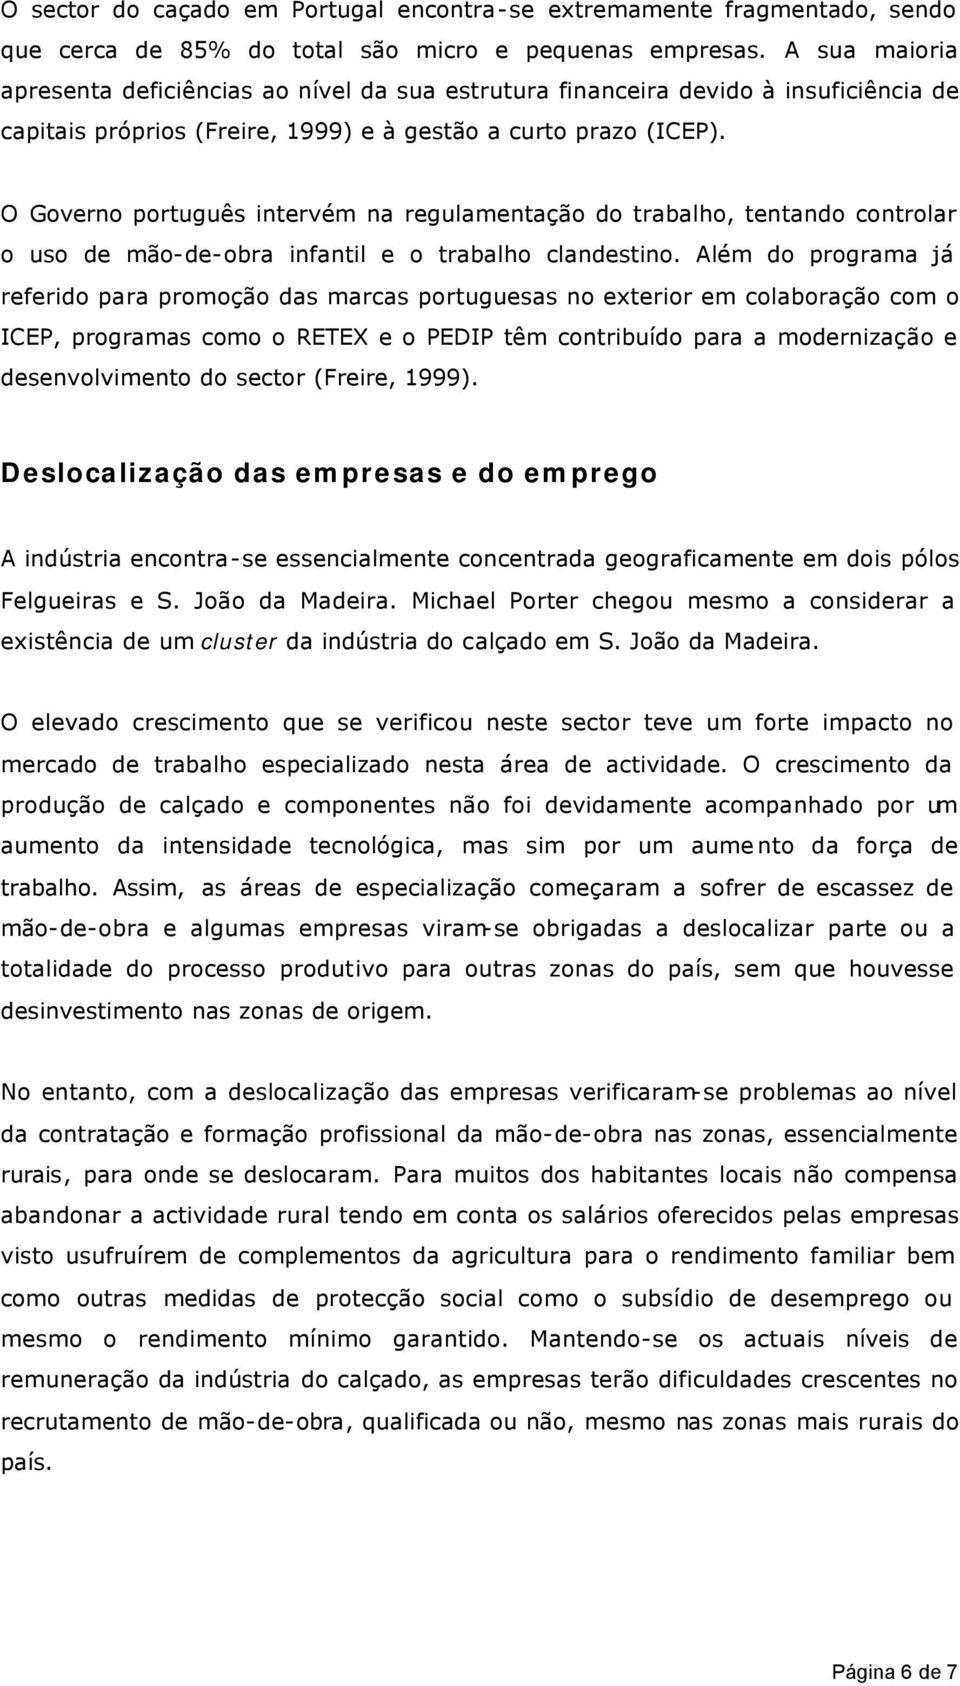 O Governo português intervém na regulamentação do trabalho, tentando controlar o uso de mão-de-obra infantil e o trabalho clandestino.